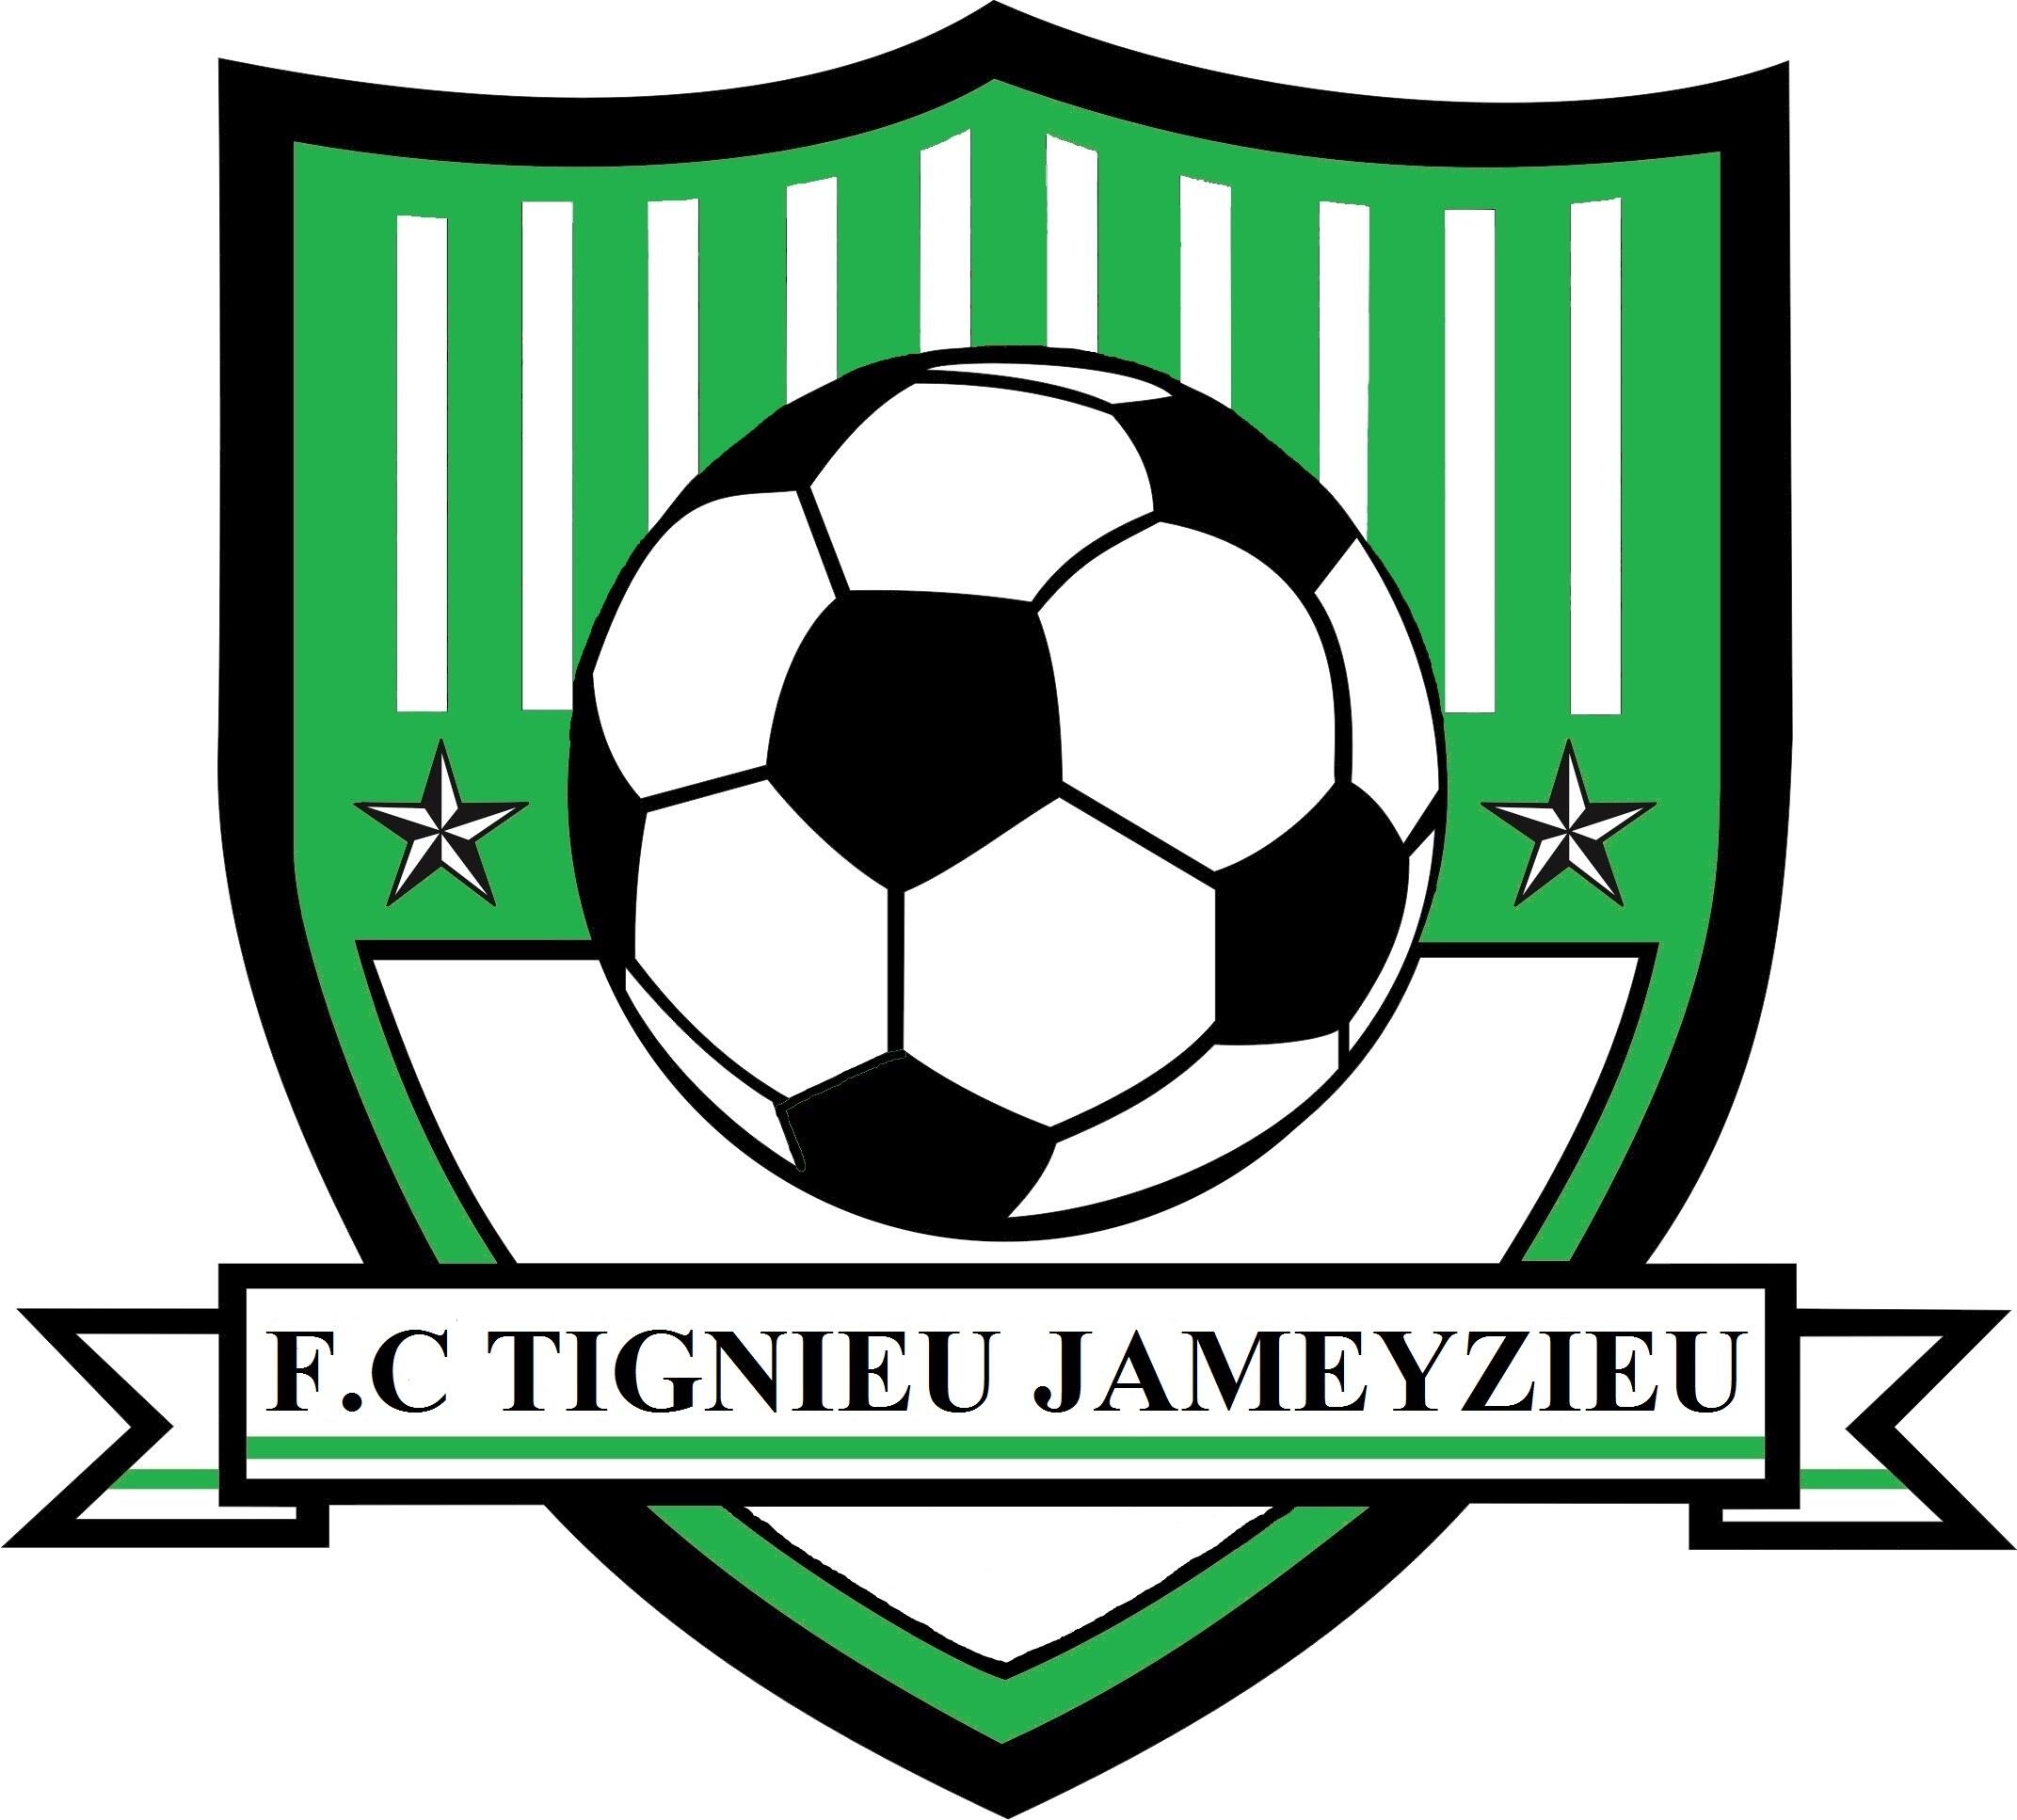 FOOTBALL CLUB DE TIGNIEU-JAMEYZIEU (FCTJ)